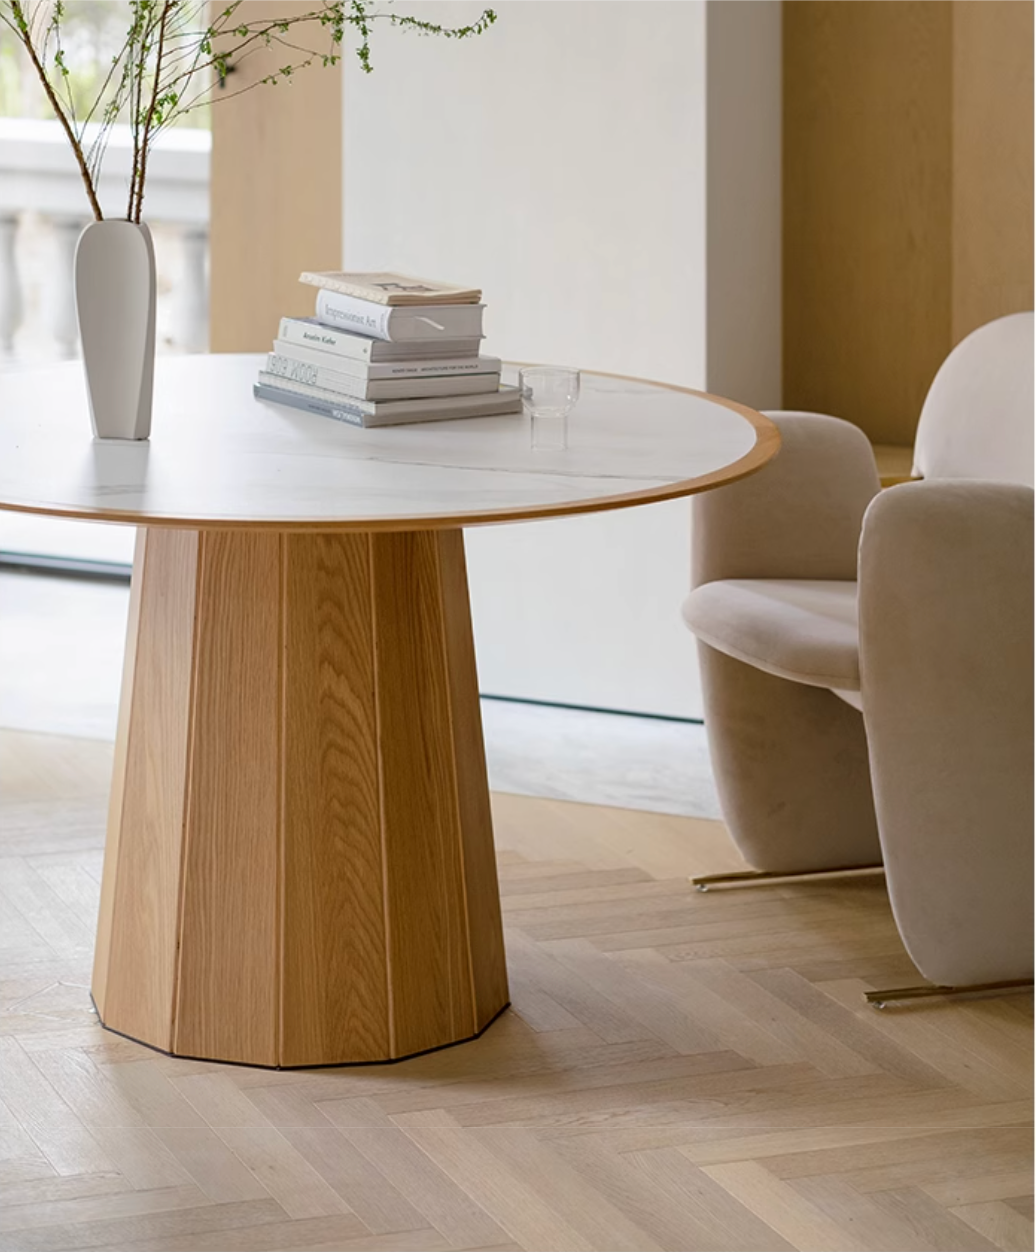 GATHERING ROUND TABLE  Ziinlife Modern Design Furniture Hong Kong  126 cm